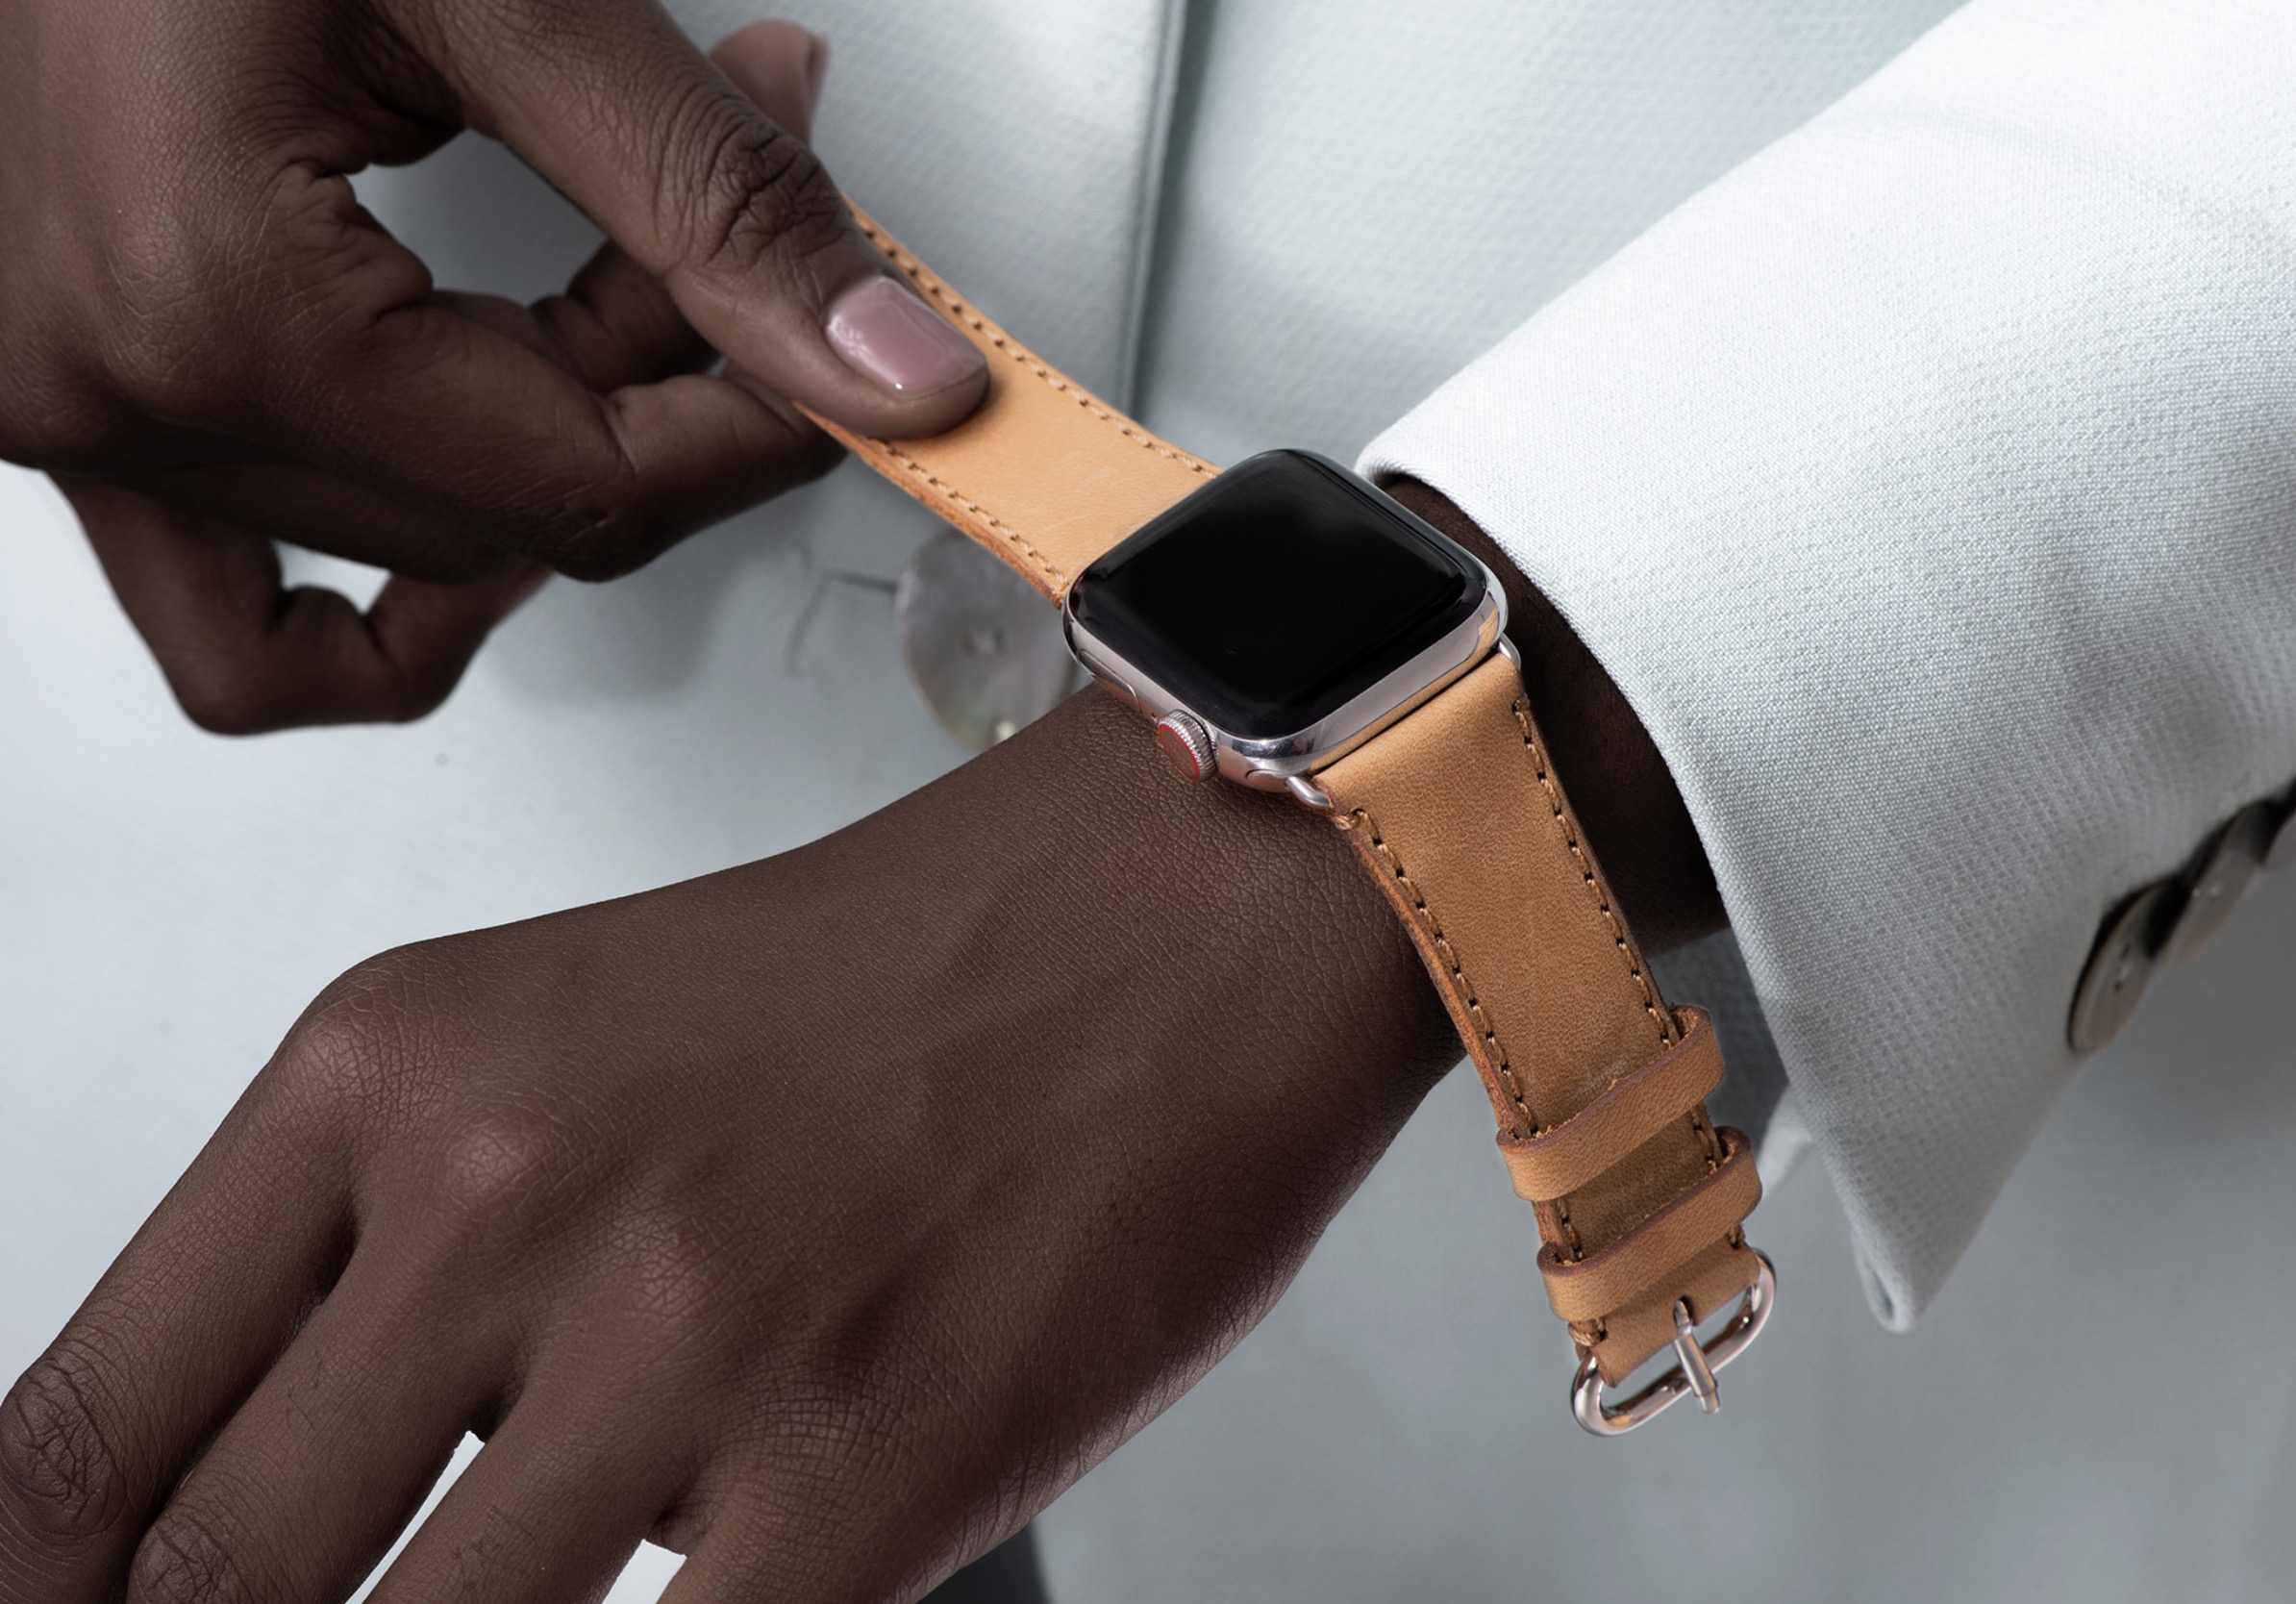 Bán 5,7 triệu chiếc Watch trong Q2, gần một nửa thị phần thuộc về Apple